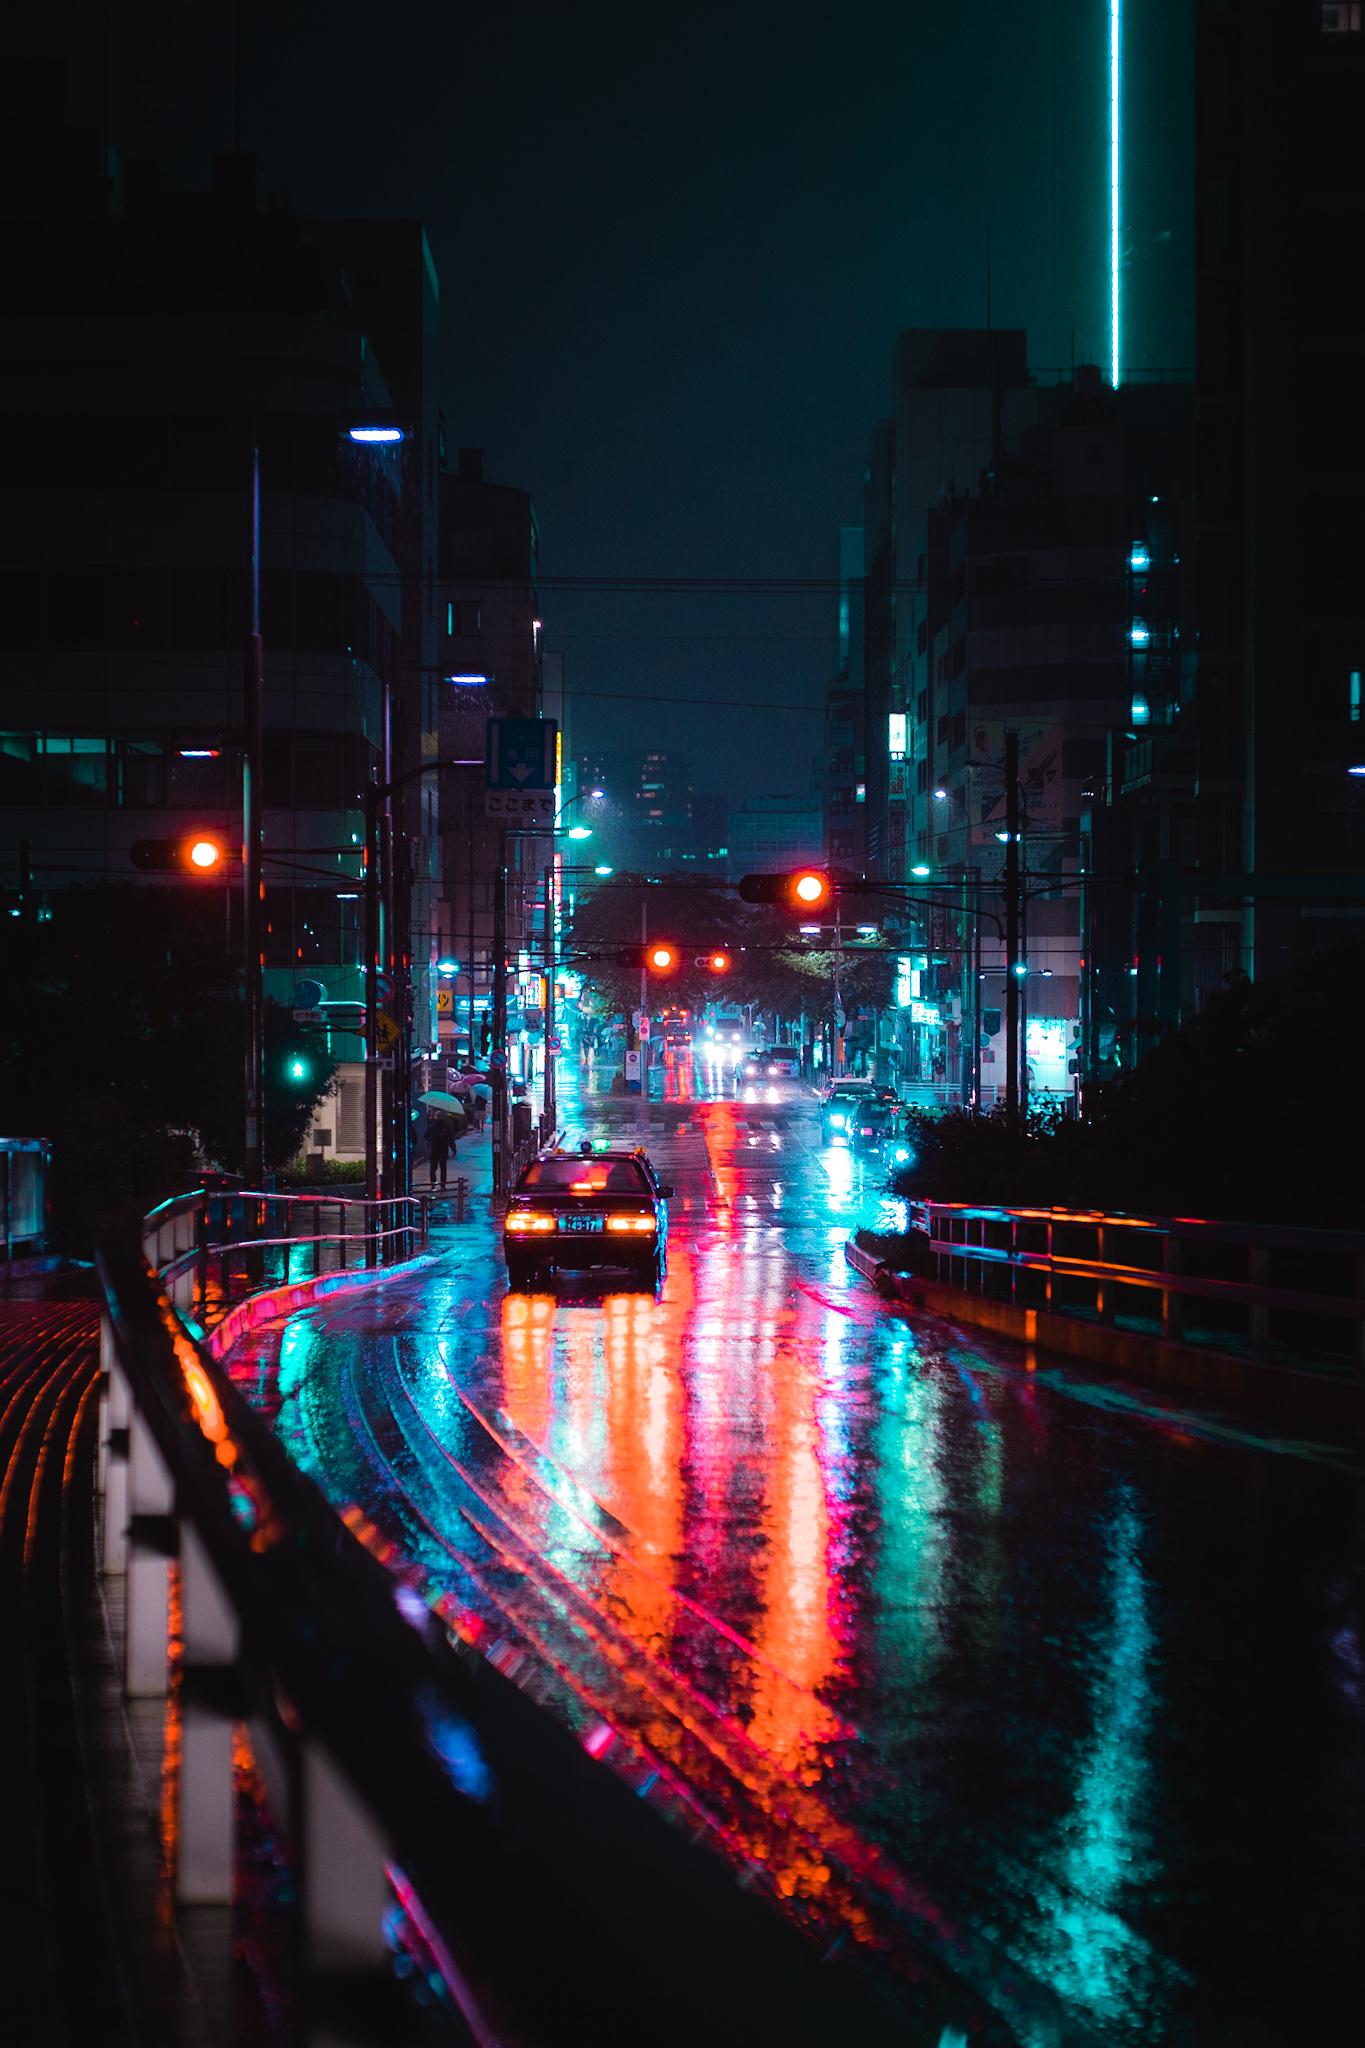 خیابان تنهایی شهر بزرگ با نور های رنگارنگ درخشان